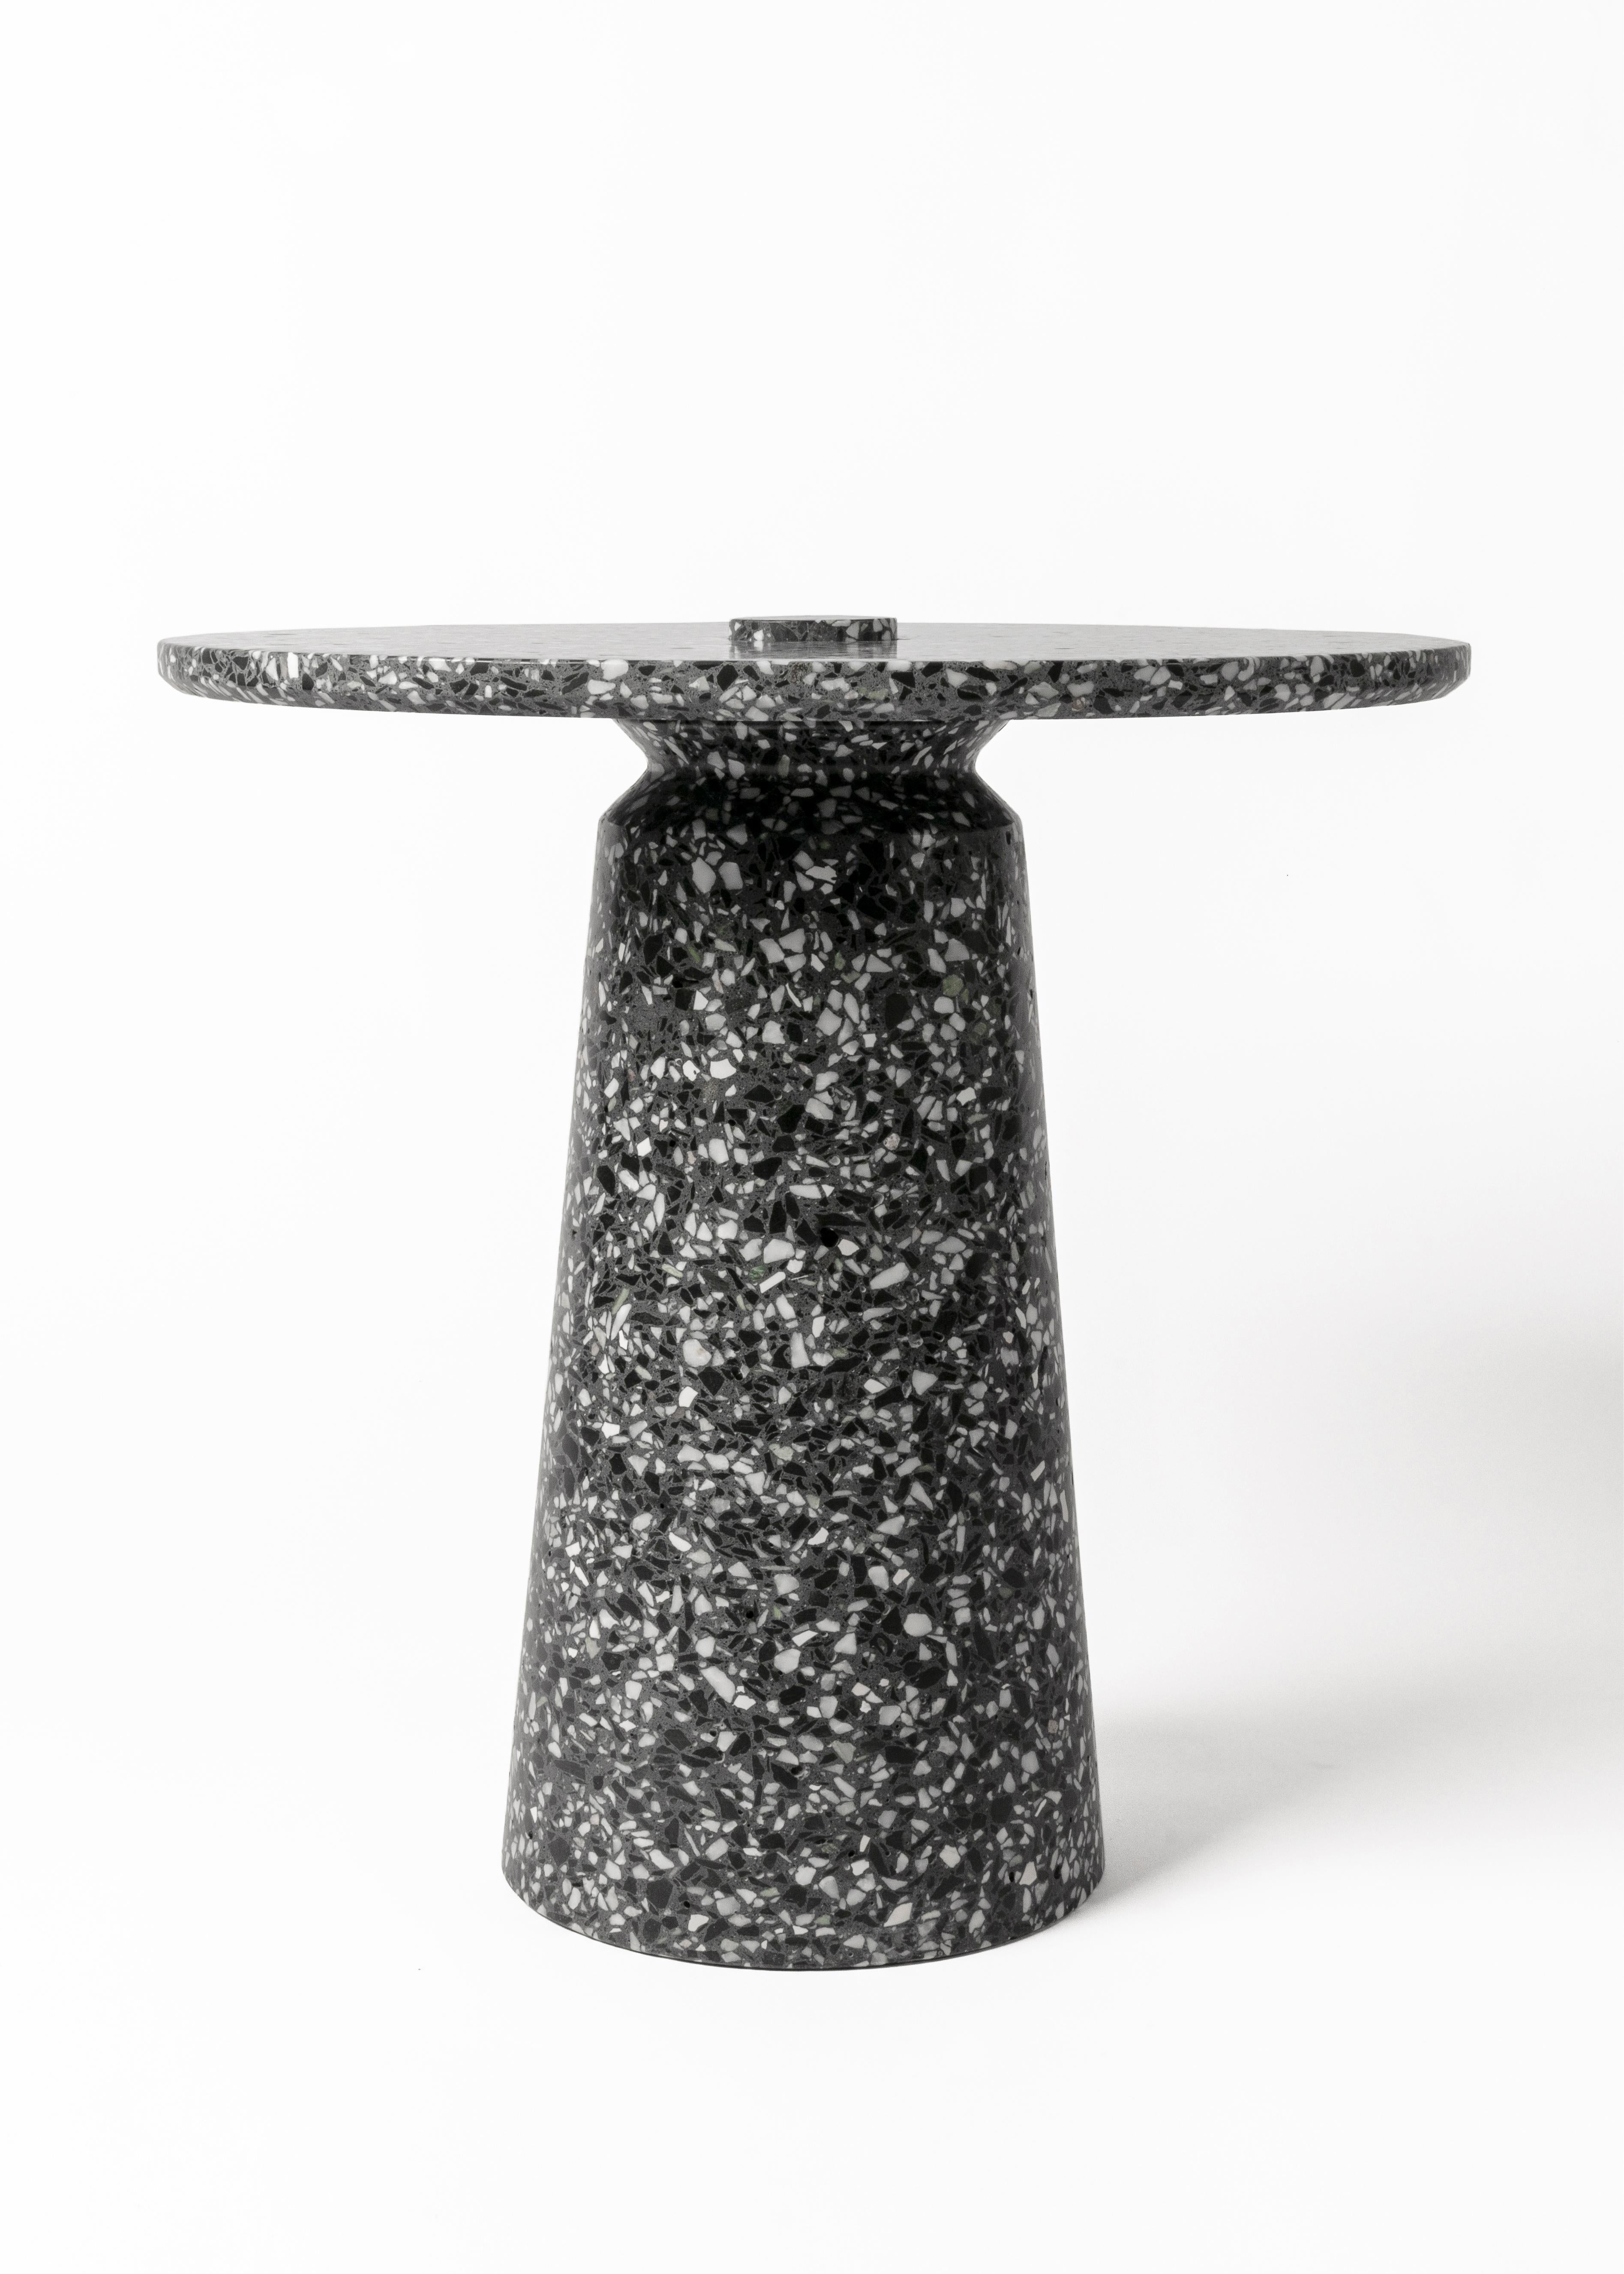 table d'appoint '8' en terrazzo (Noir / blanc)

Mesures : Ø 50 cm × H 50,3 cm

Les meubles et luminaires de Bentu Design tirent leur singularité de la simplicité de leurs formes et de leurs matériaux. Conçus et fabriqués par les designers du